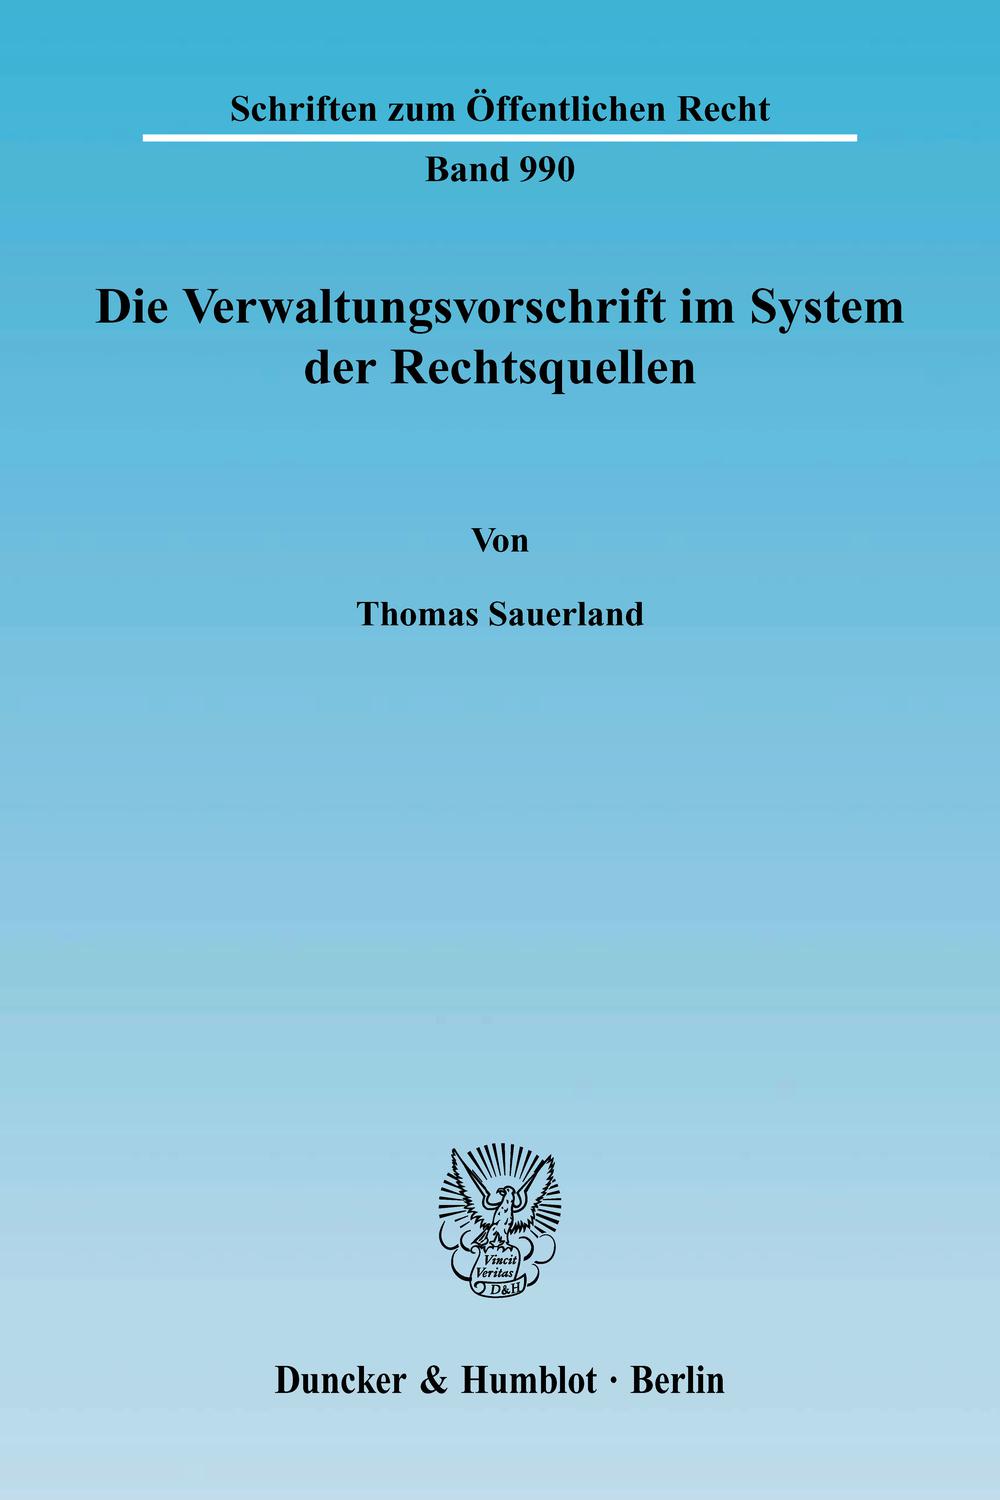 Die Verwaltungsvorschrift im System der Rechtsquellen. - Thomas Sauerland